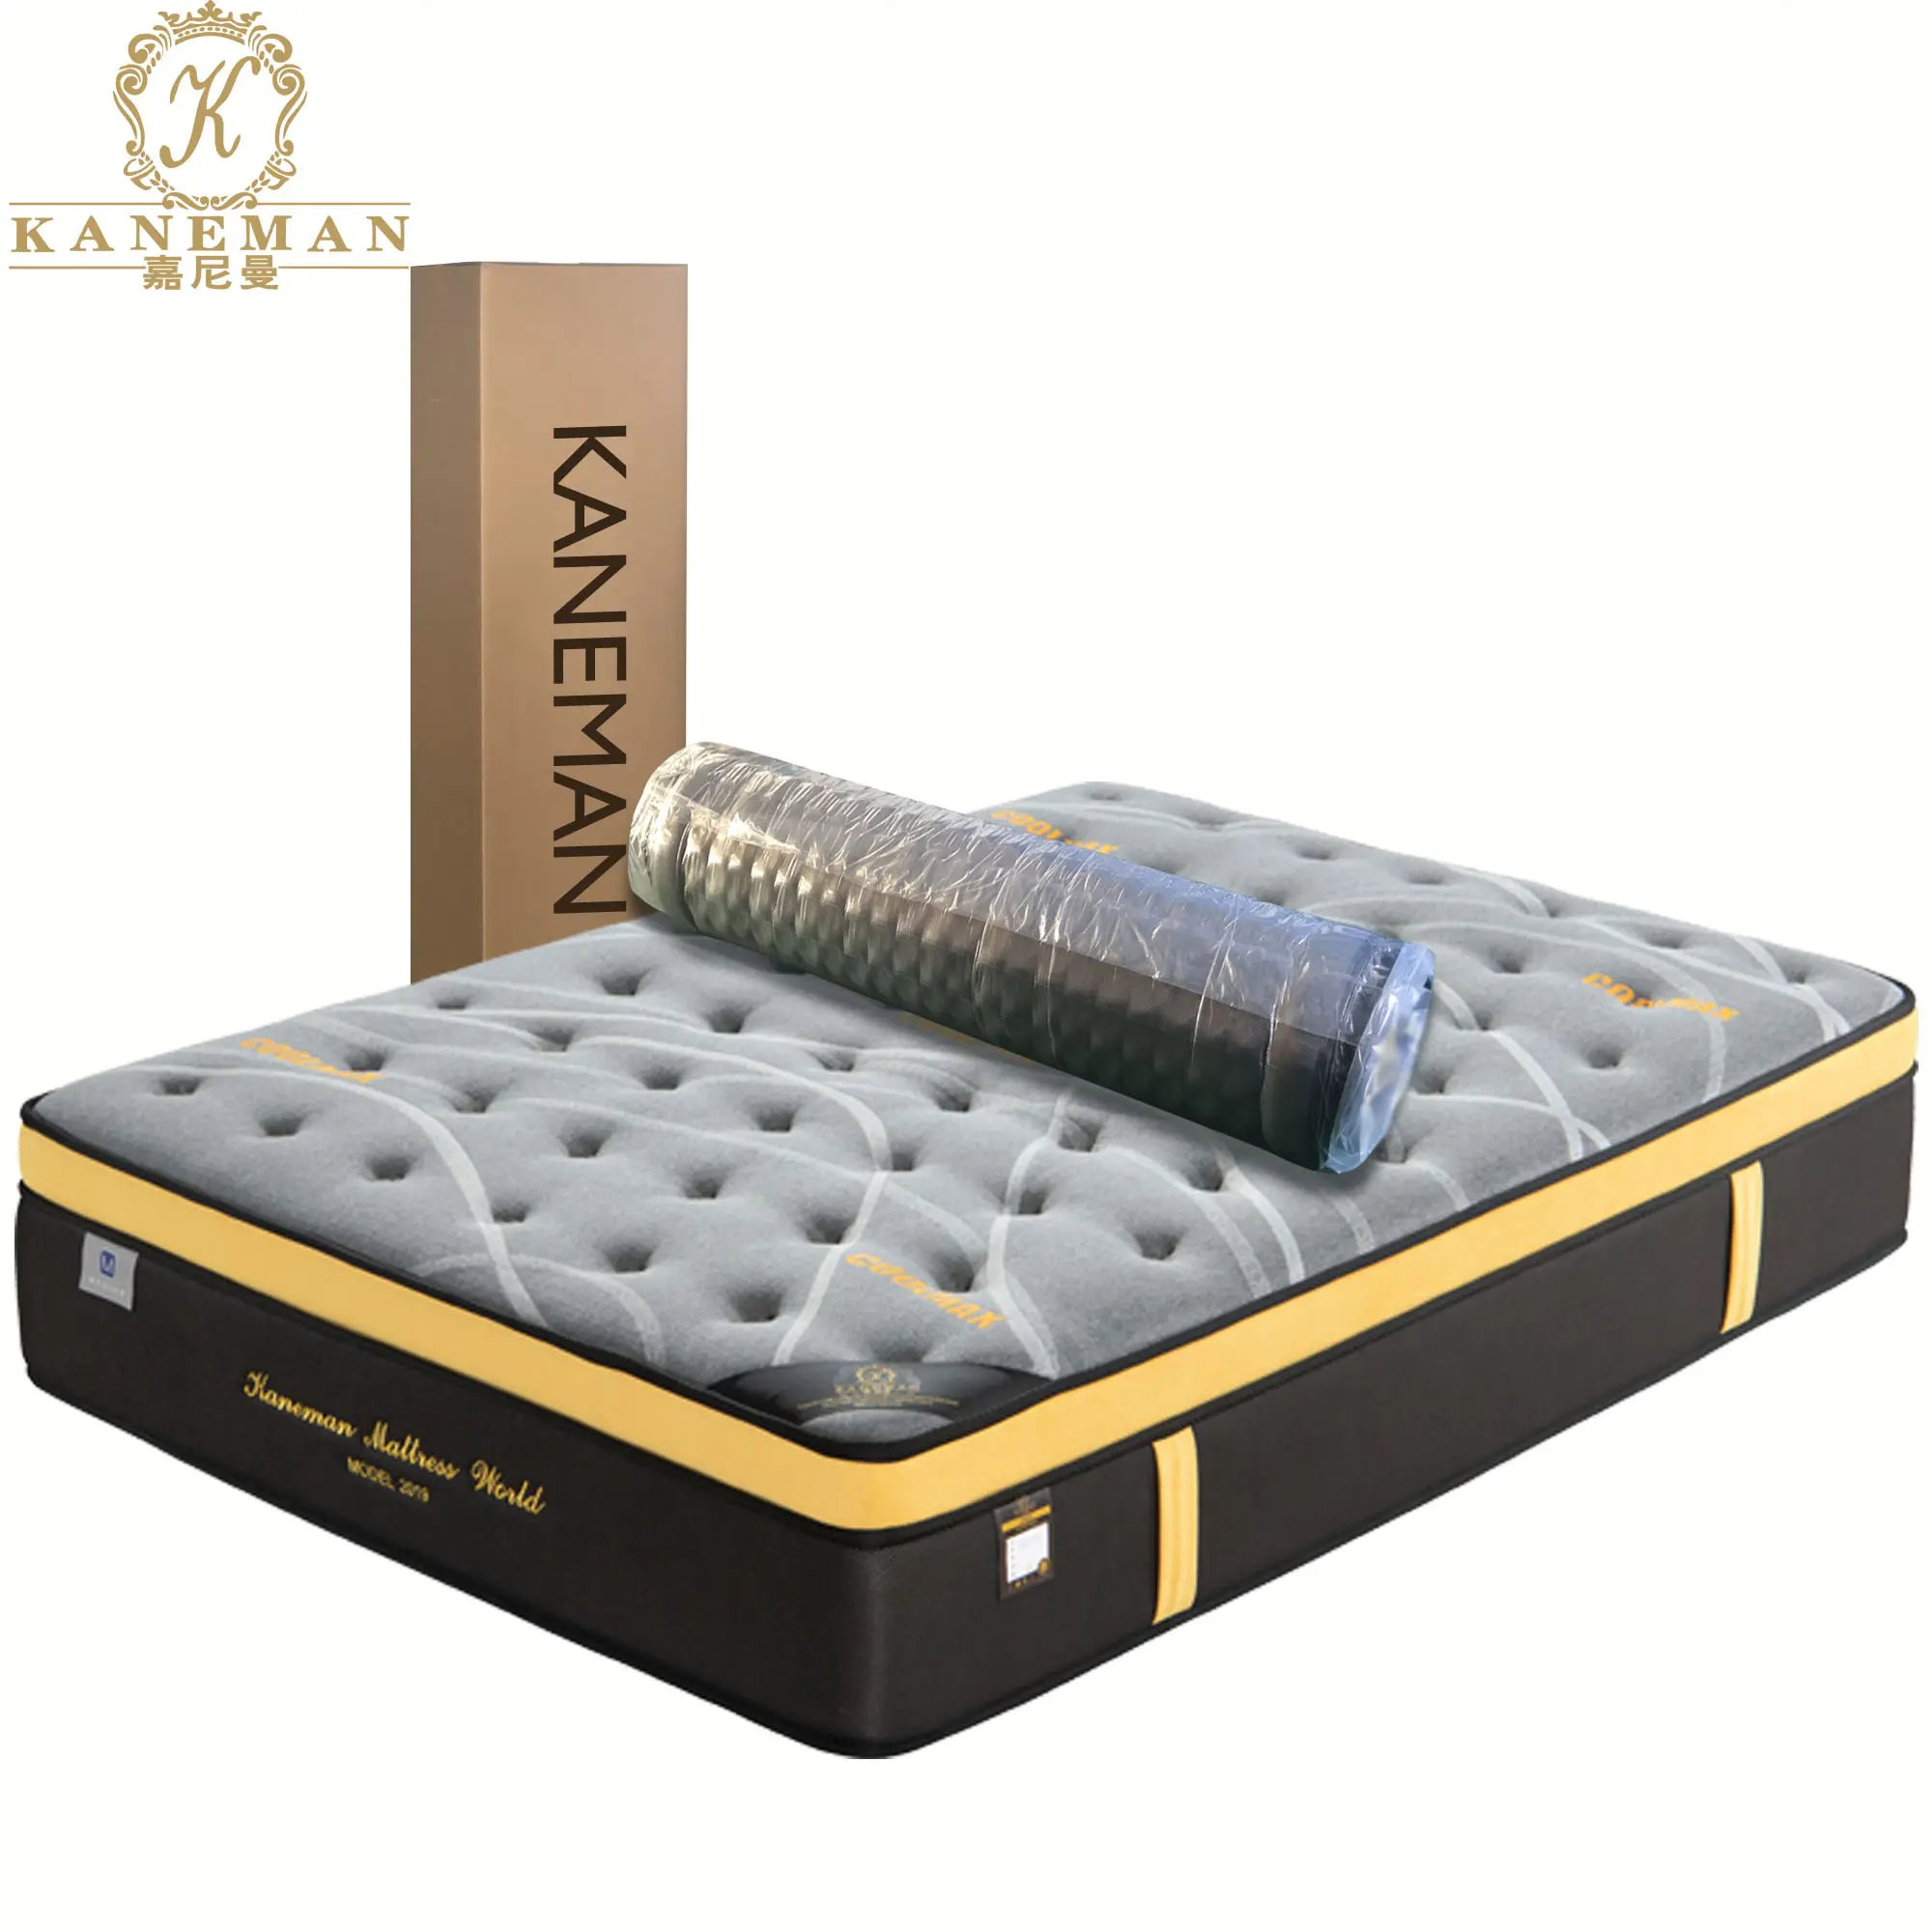 Beliebte Art 30cm Vakuum Roll Up Pocket Feder bett Matratze in einer Box Roll Packing Matratze in einer Box